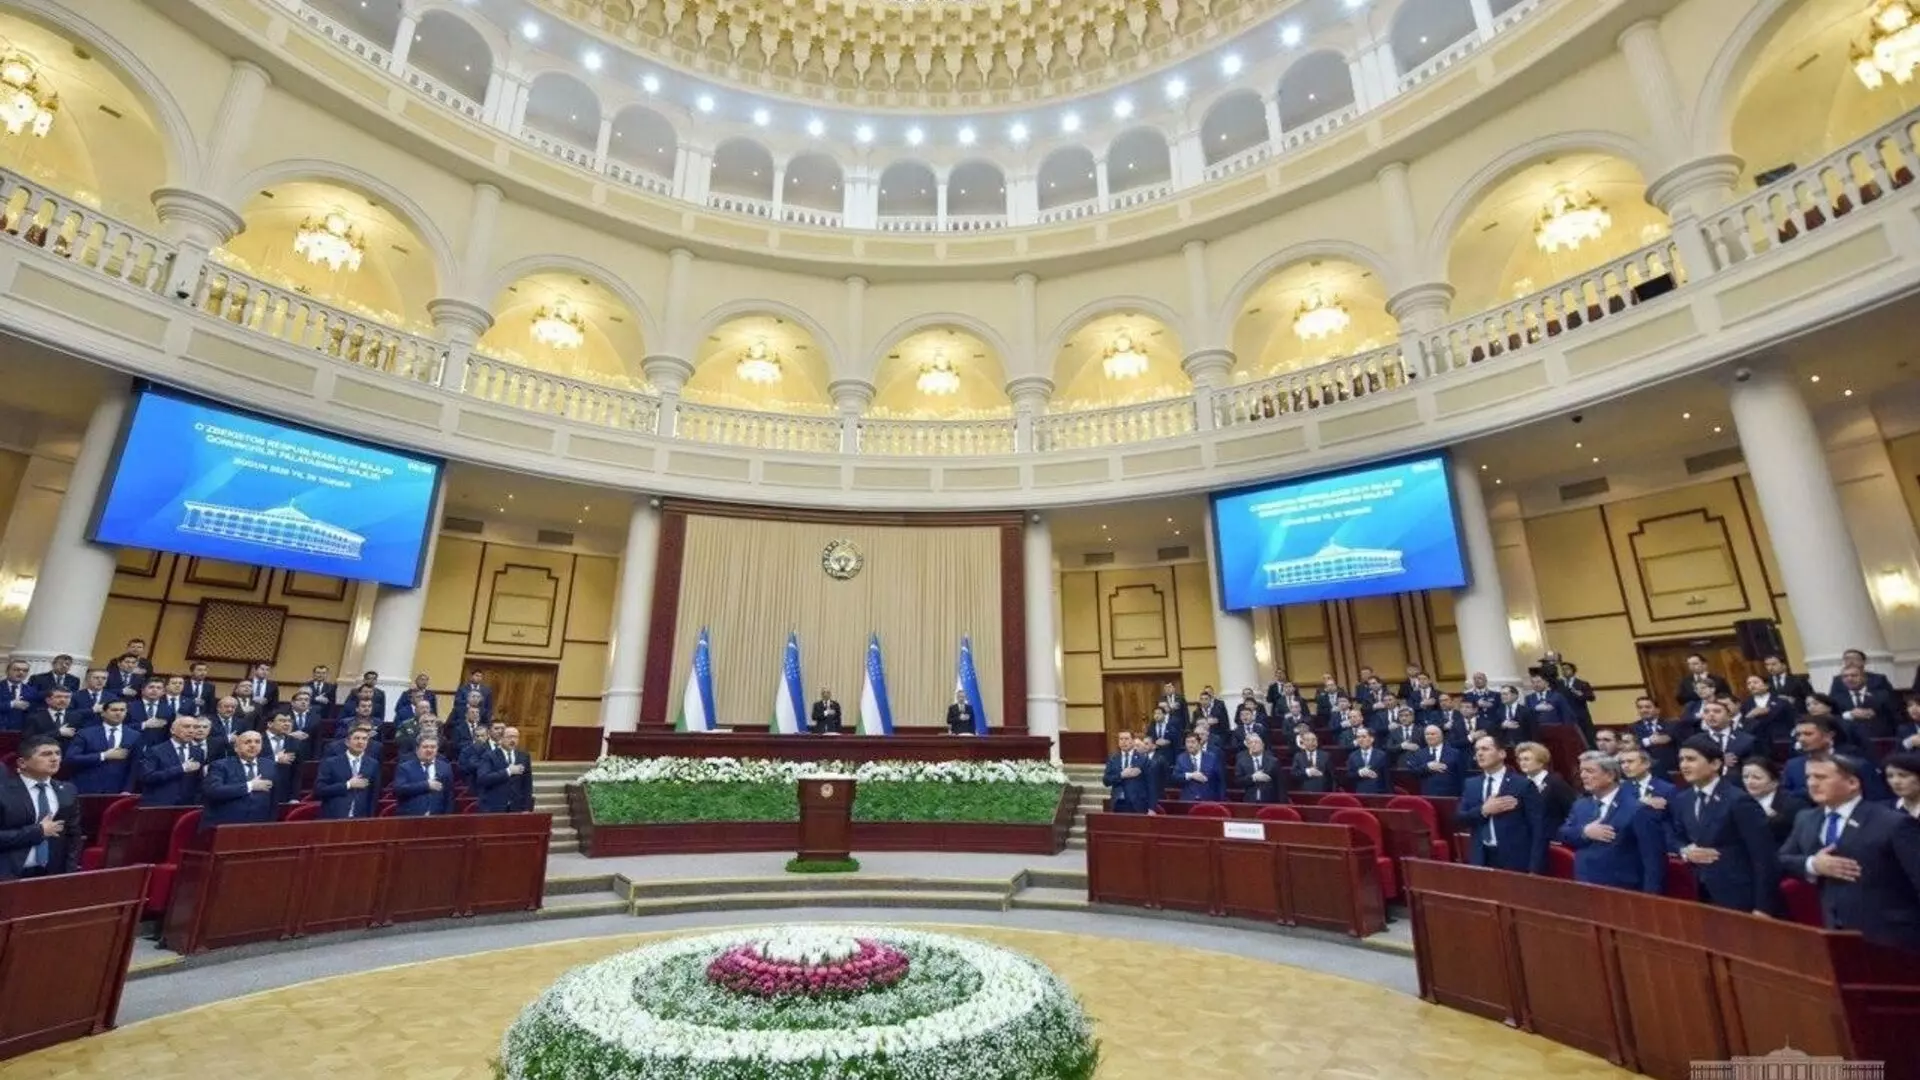 Параллельный импорт под угрозой: Узбекистан присоединился к антироссийским санкциям